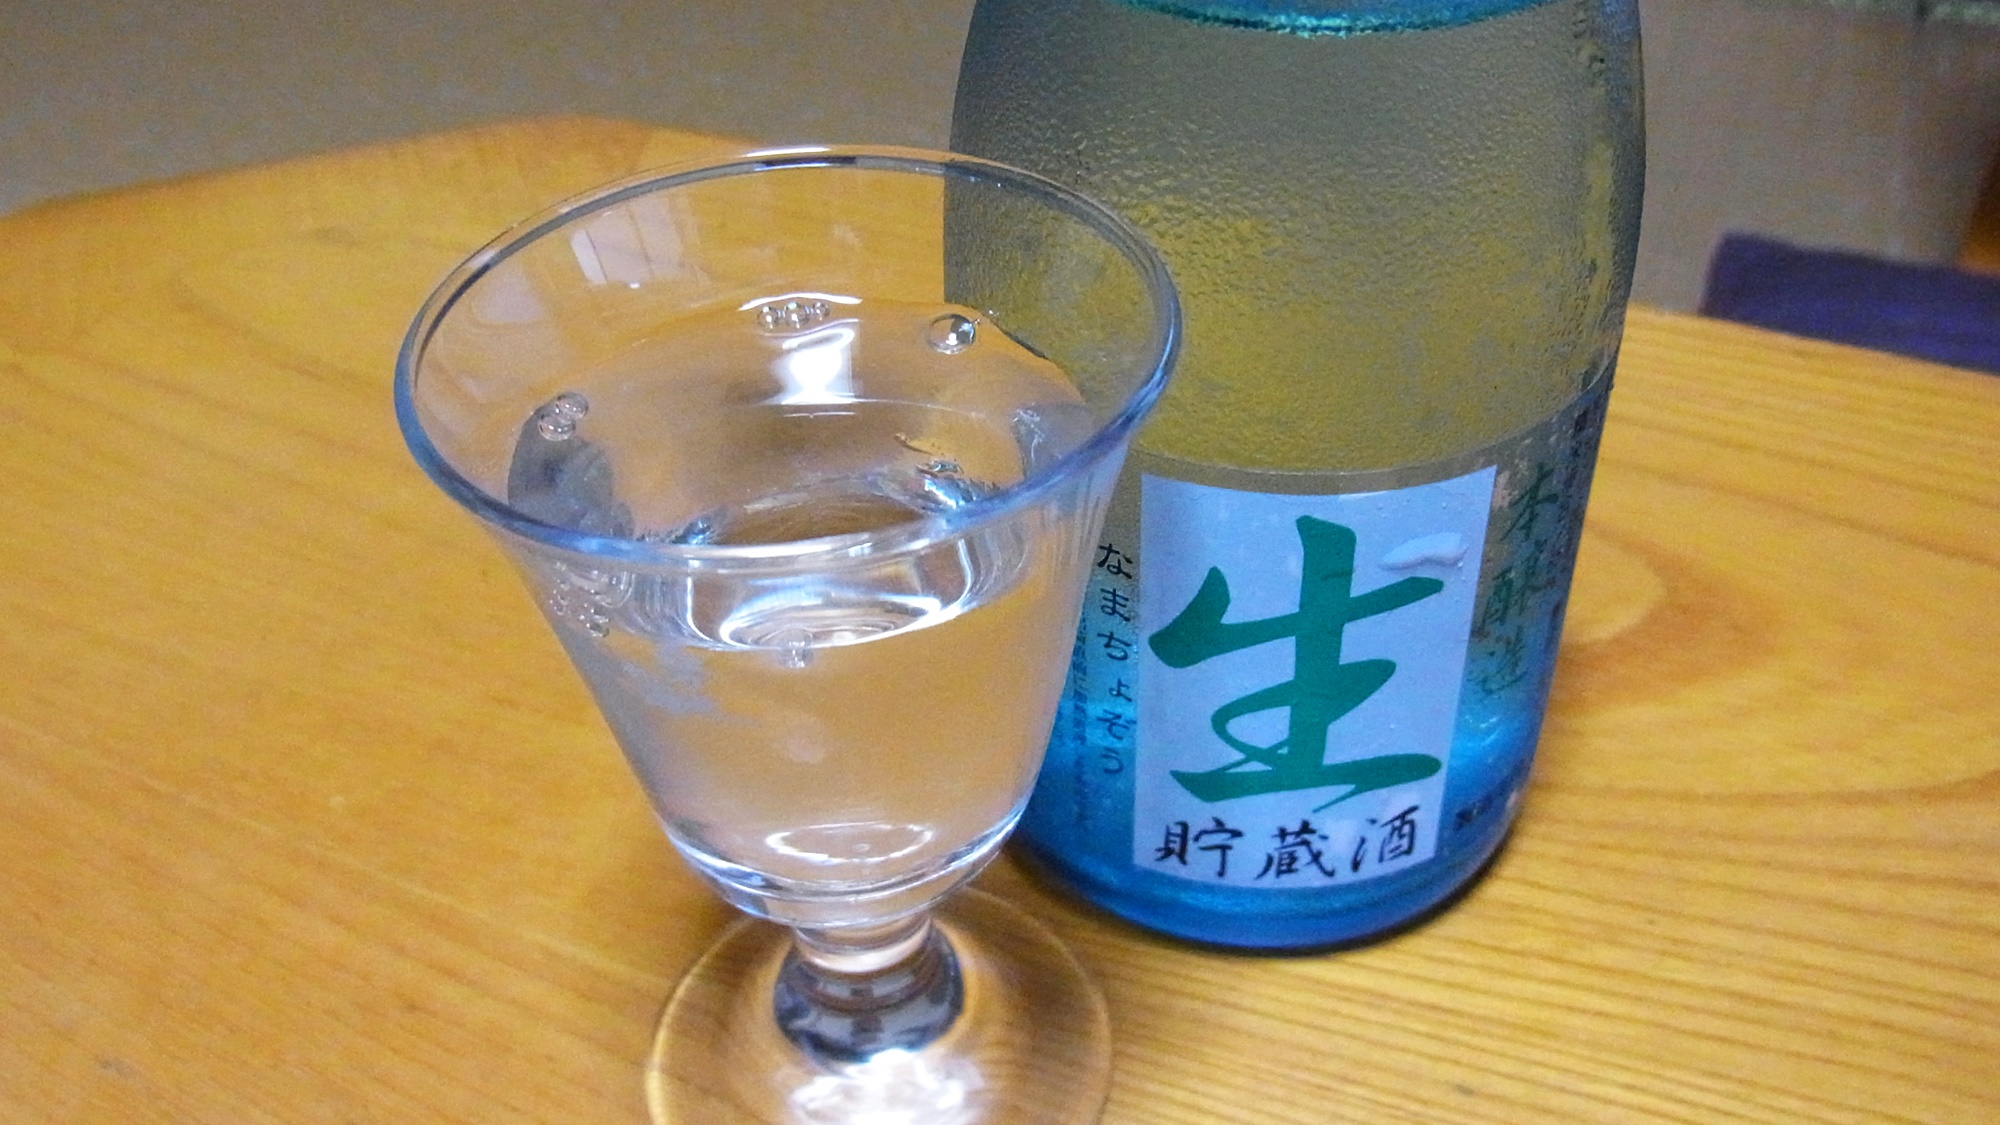 *【飲料】日本酒でございます。この辺りはキレイな水を活かしたお酒の産地です。ぜひどうぞ♪